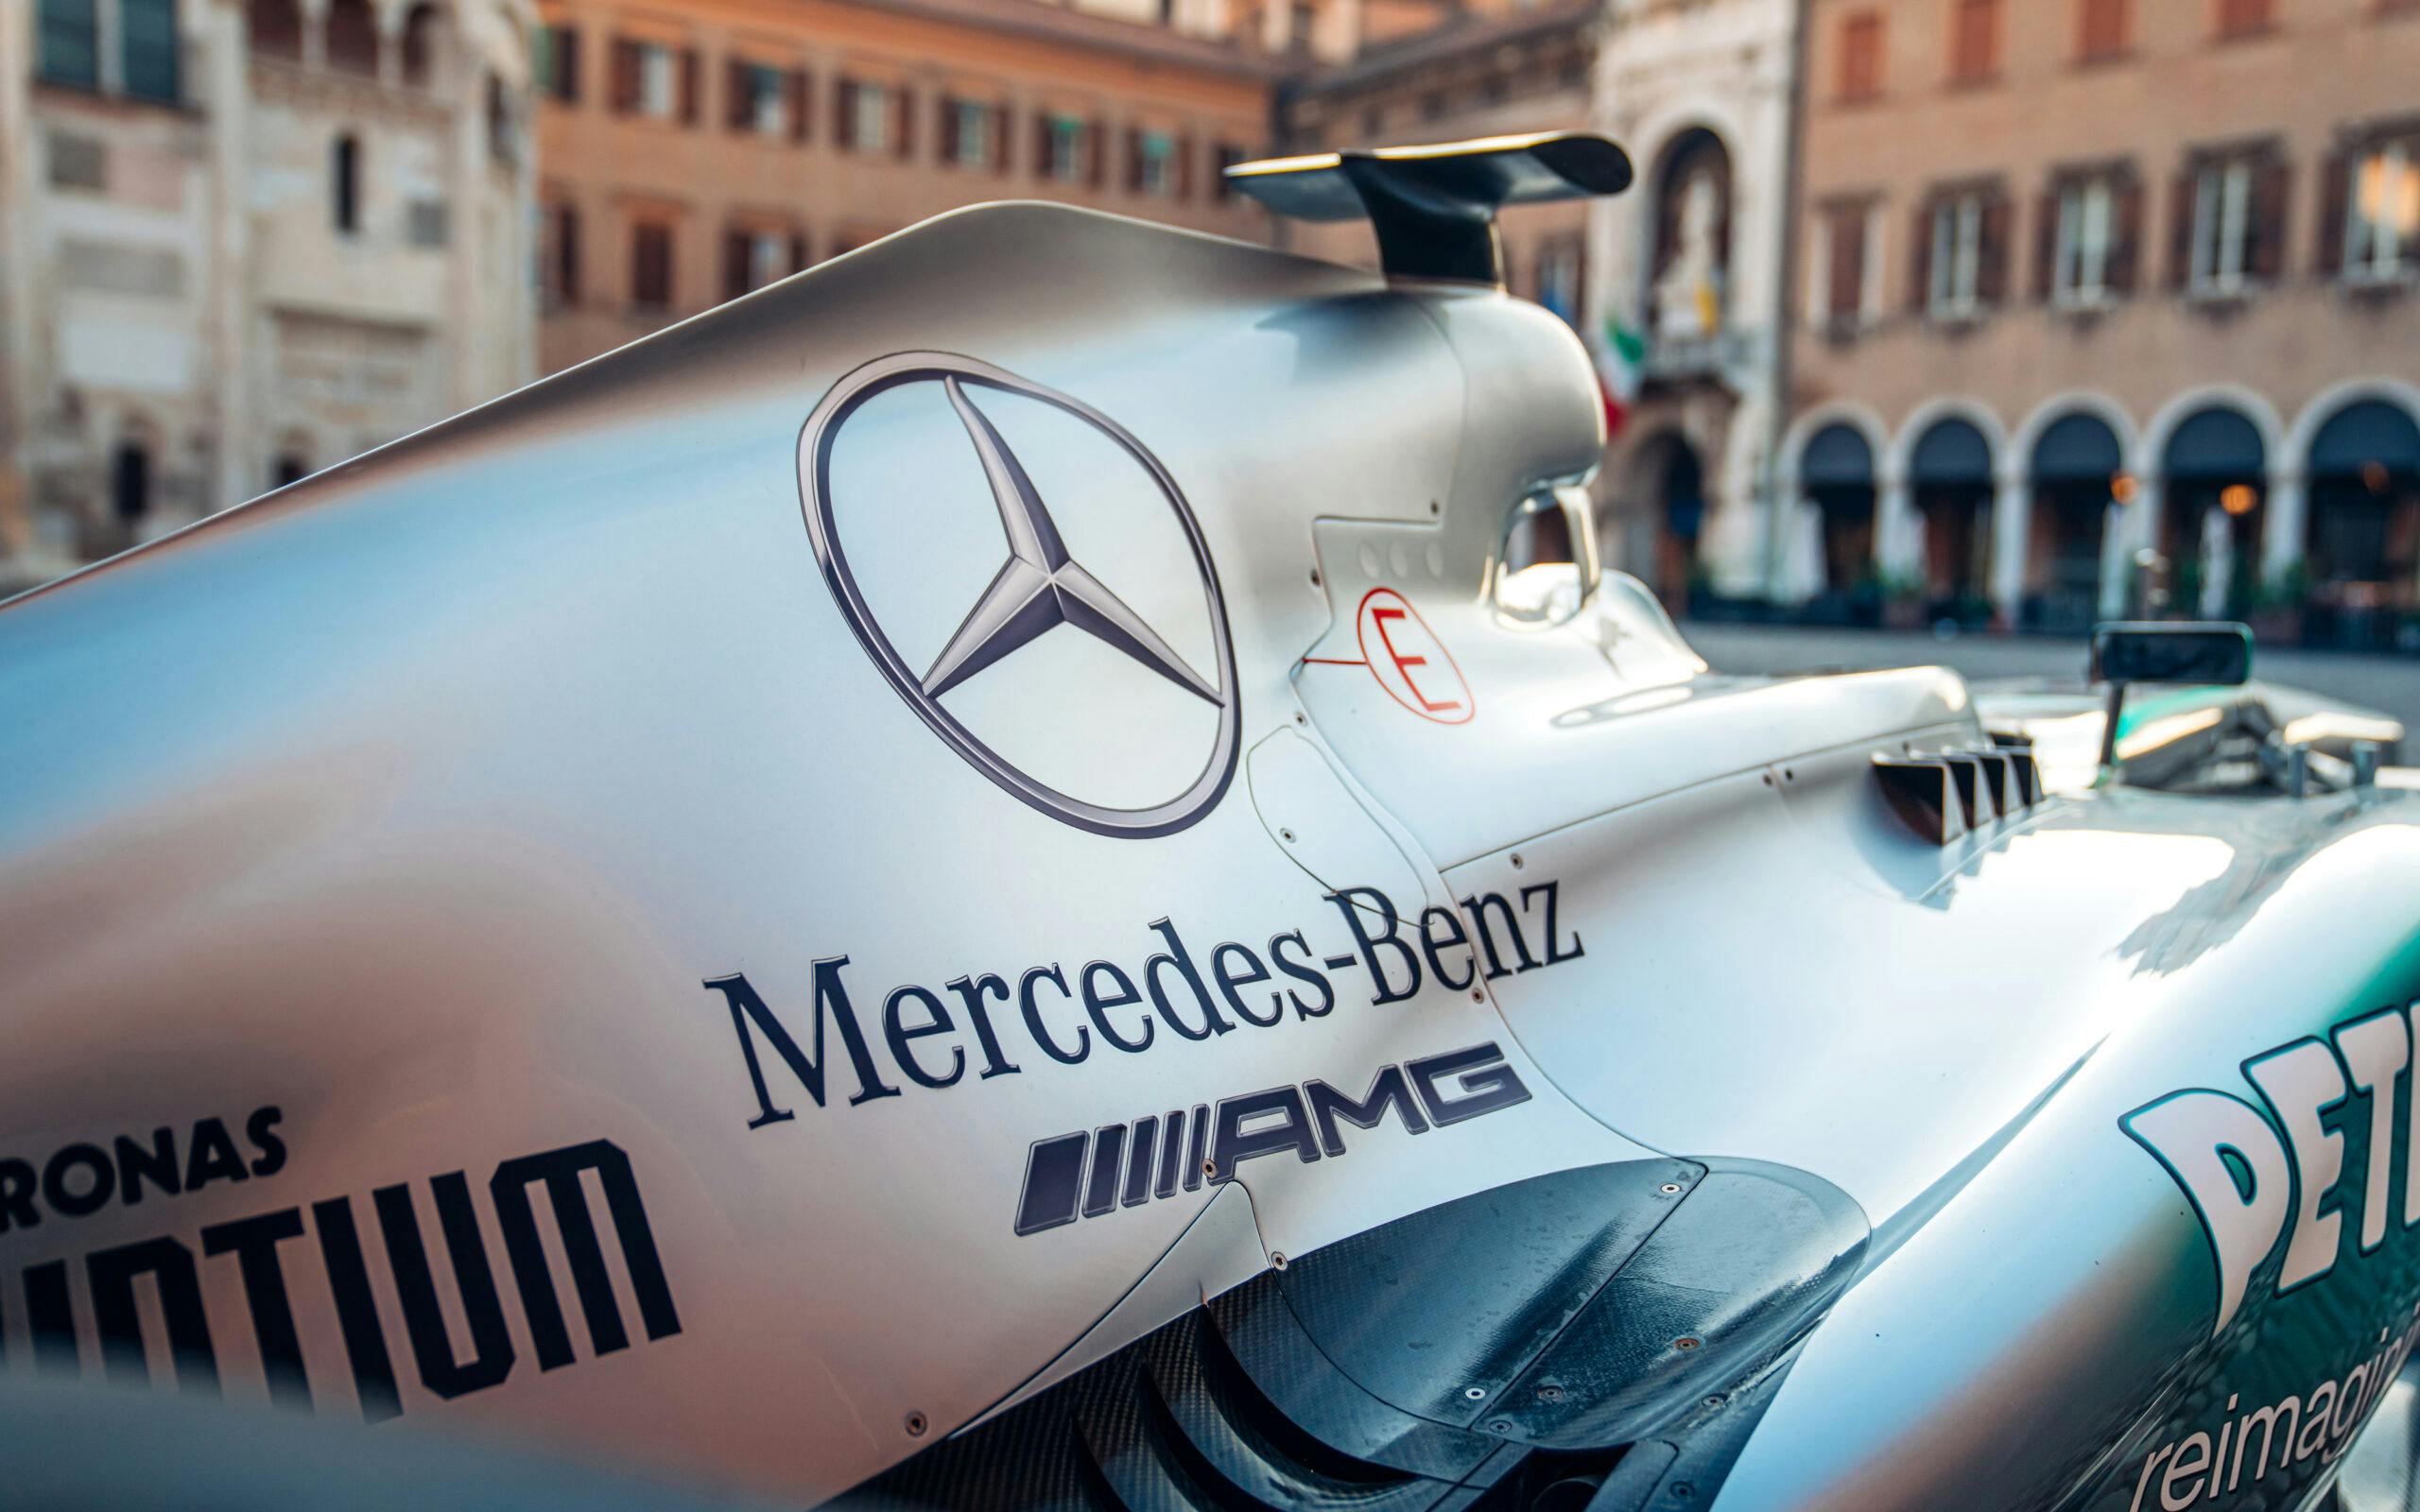 2013-Mercedes-AMG-Petronas-F1 car cowling